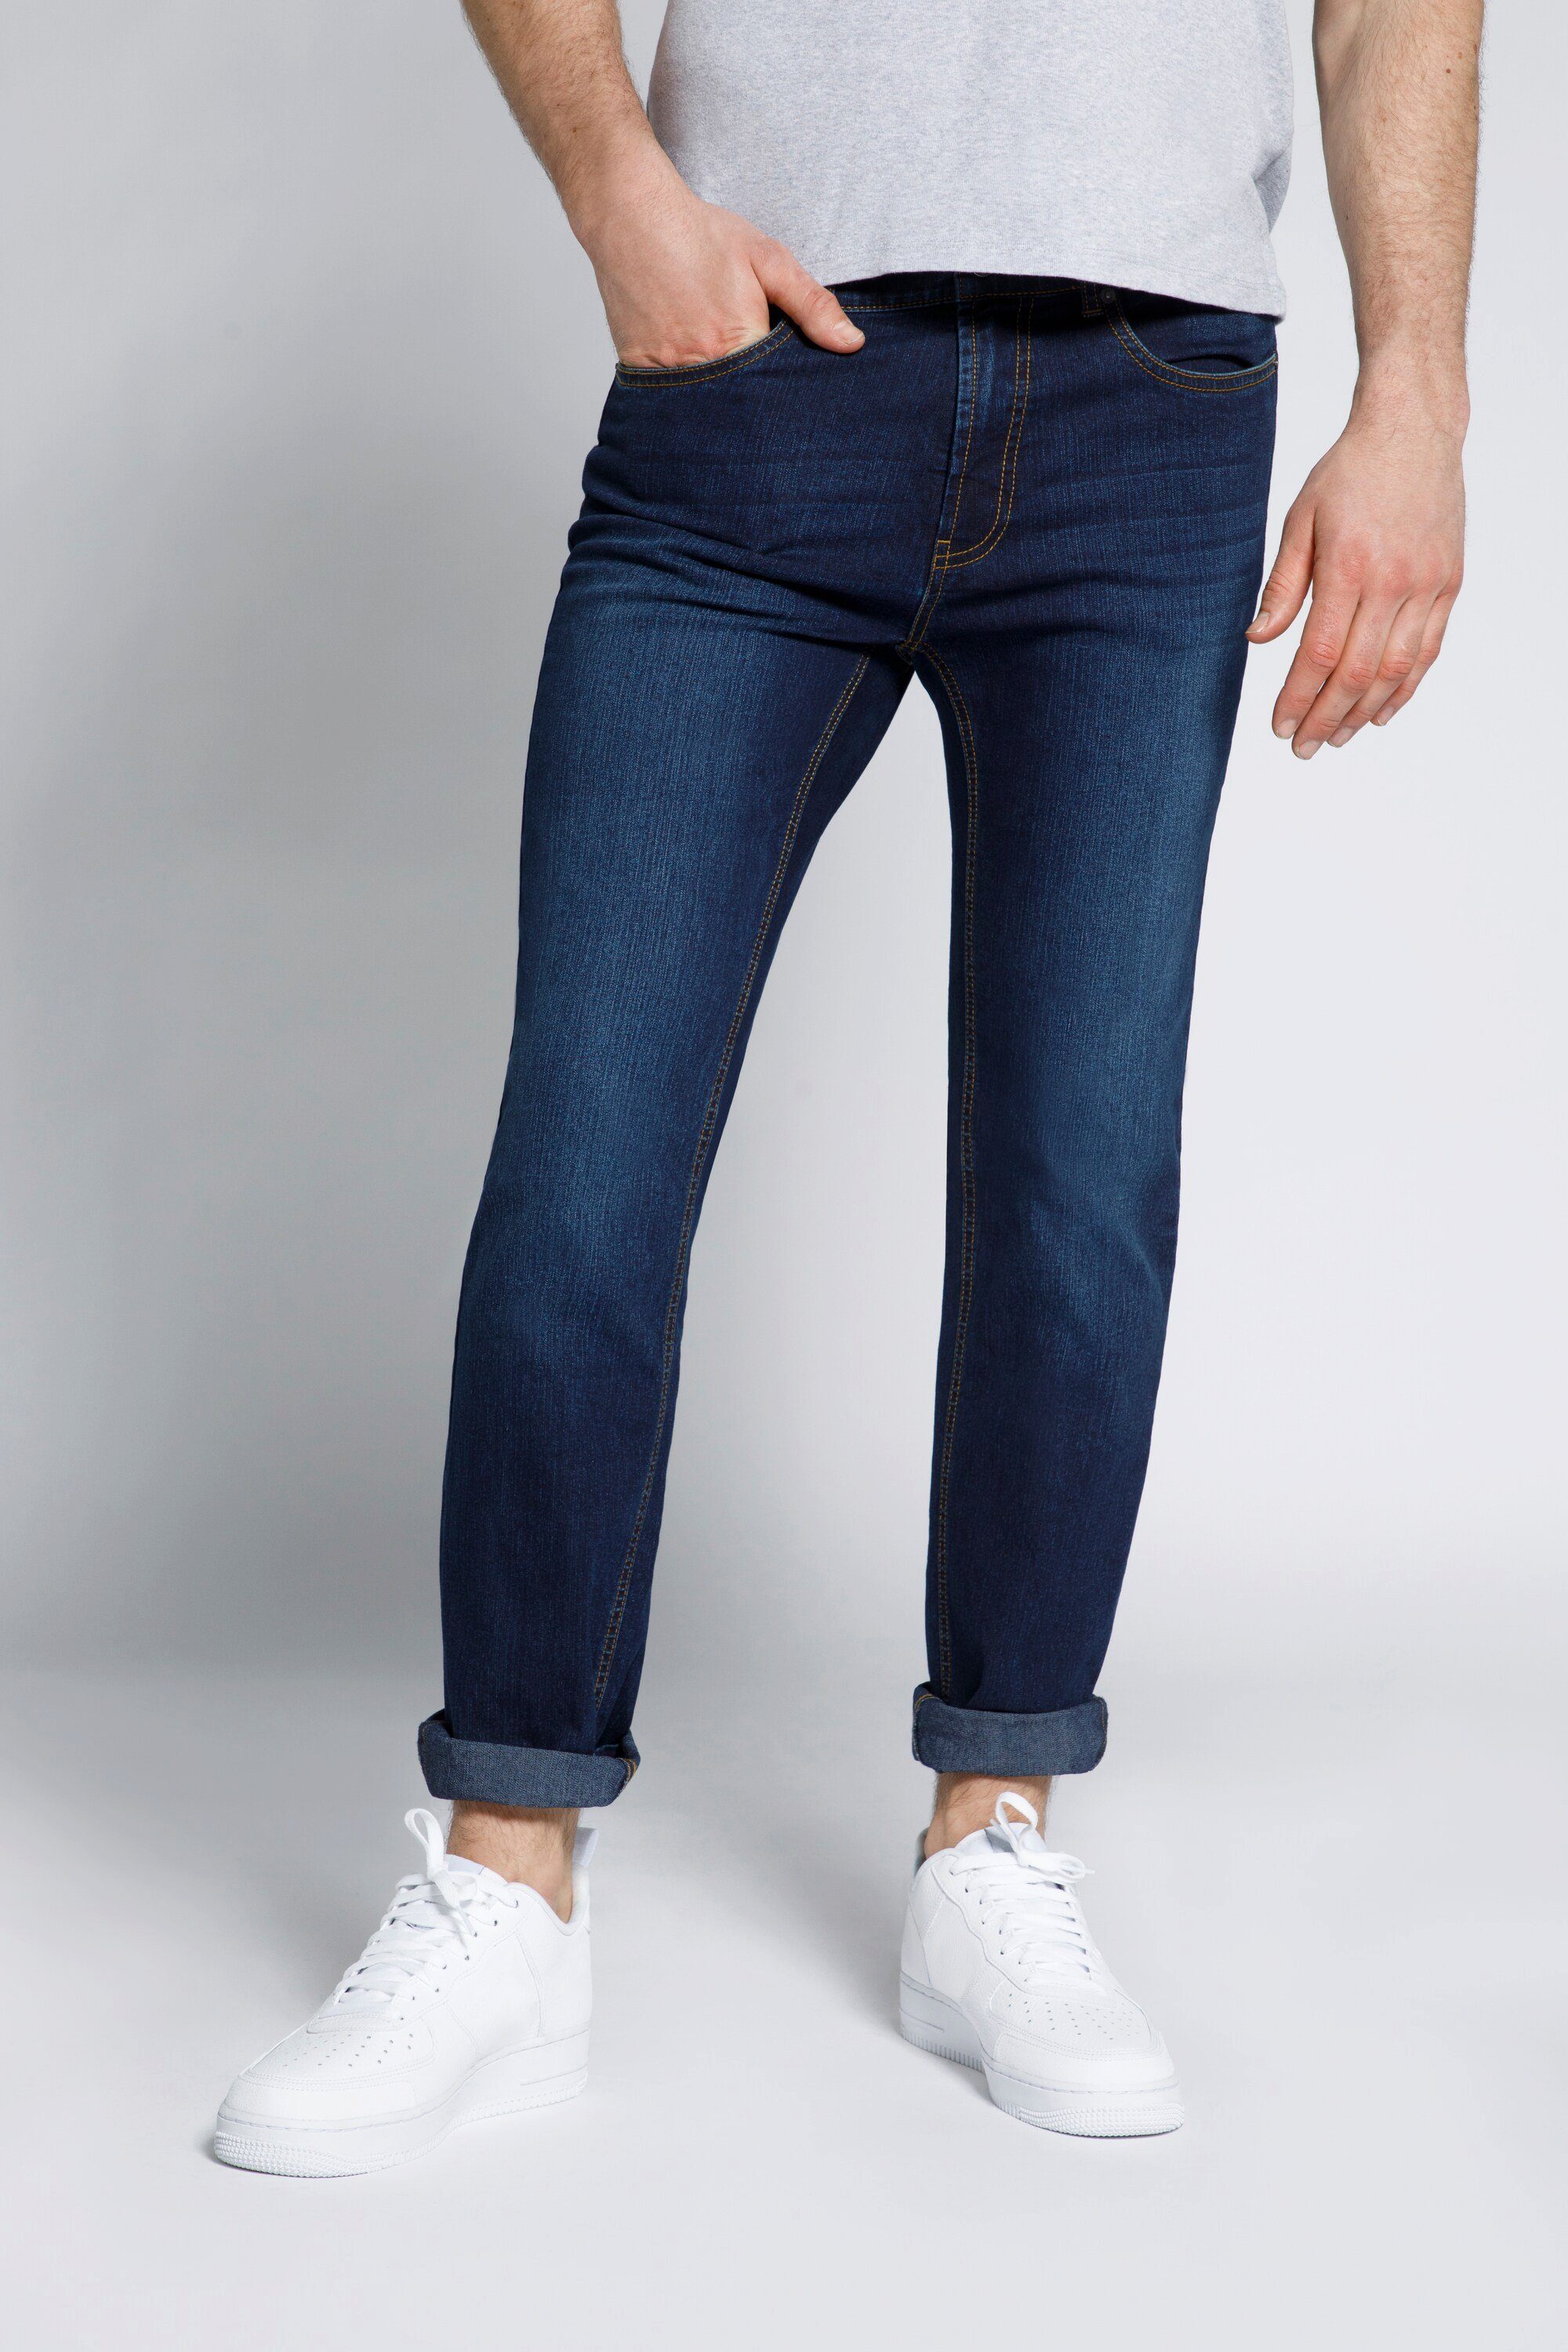 STHUGE 5-Pocket-Jeans STHUGE Herren Jeans Modern Fit dark blue denim